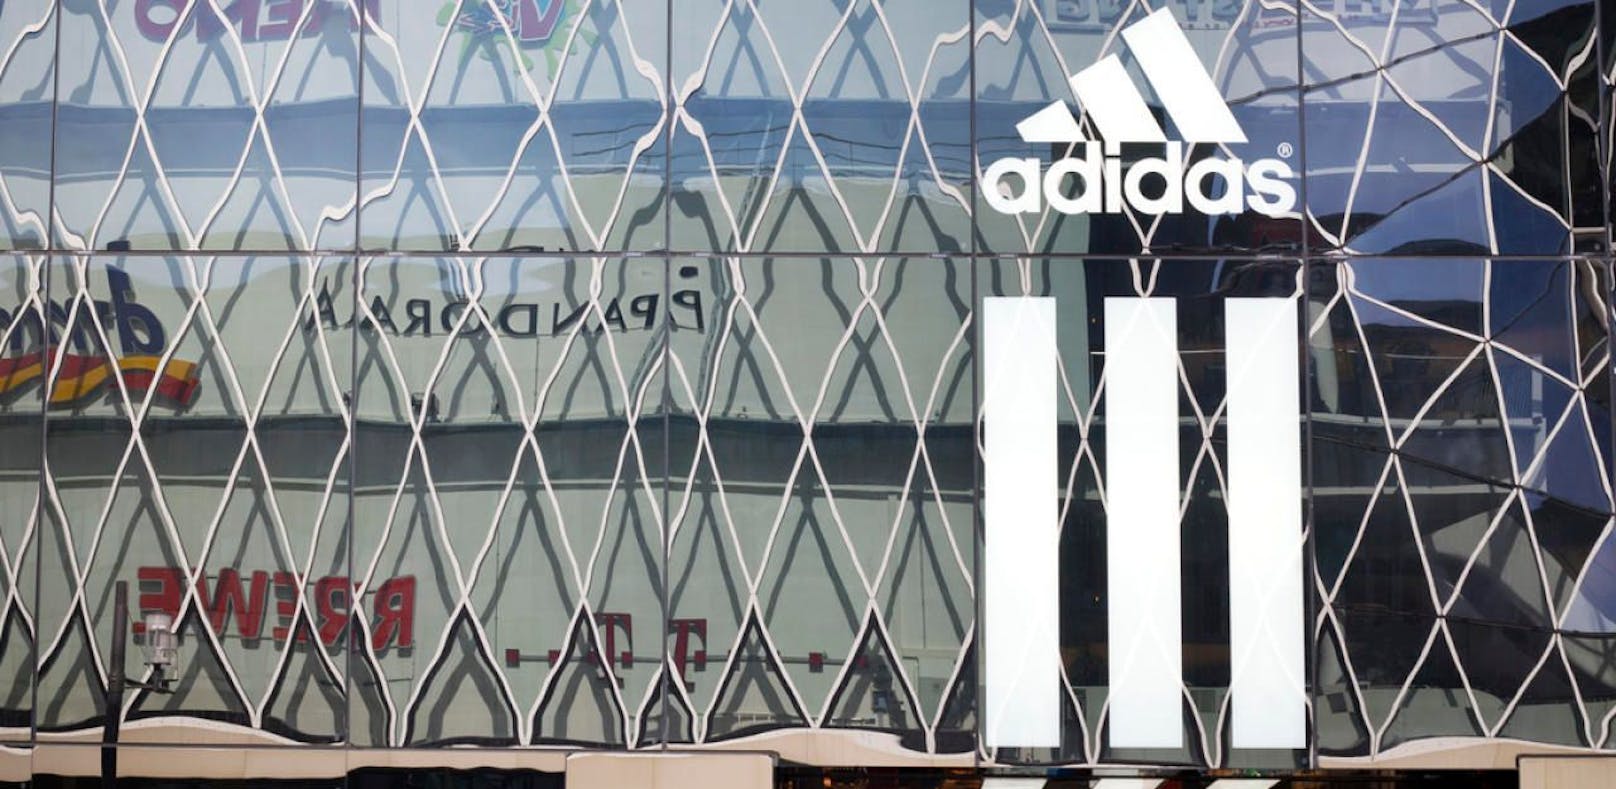 Adidas verliert Markenstreit um 3 Streifen